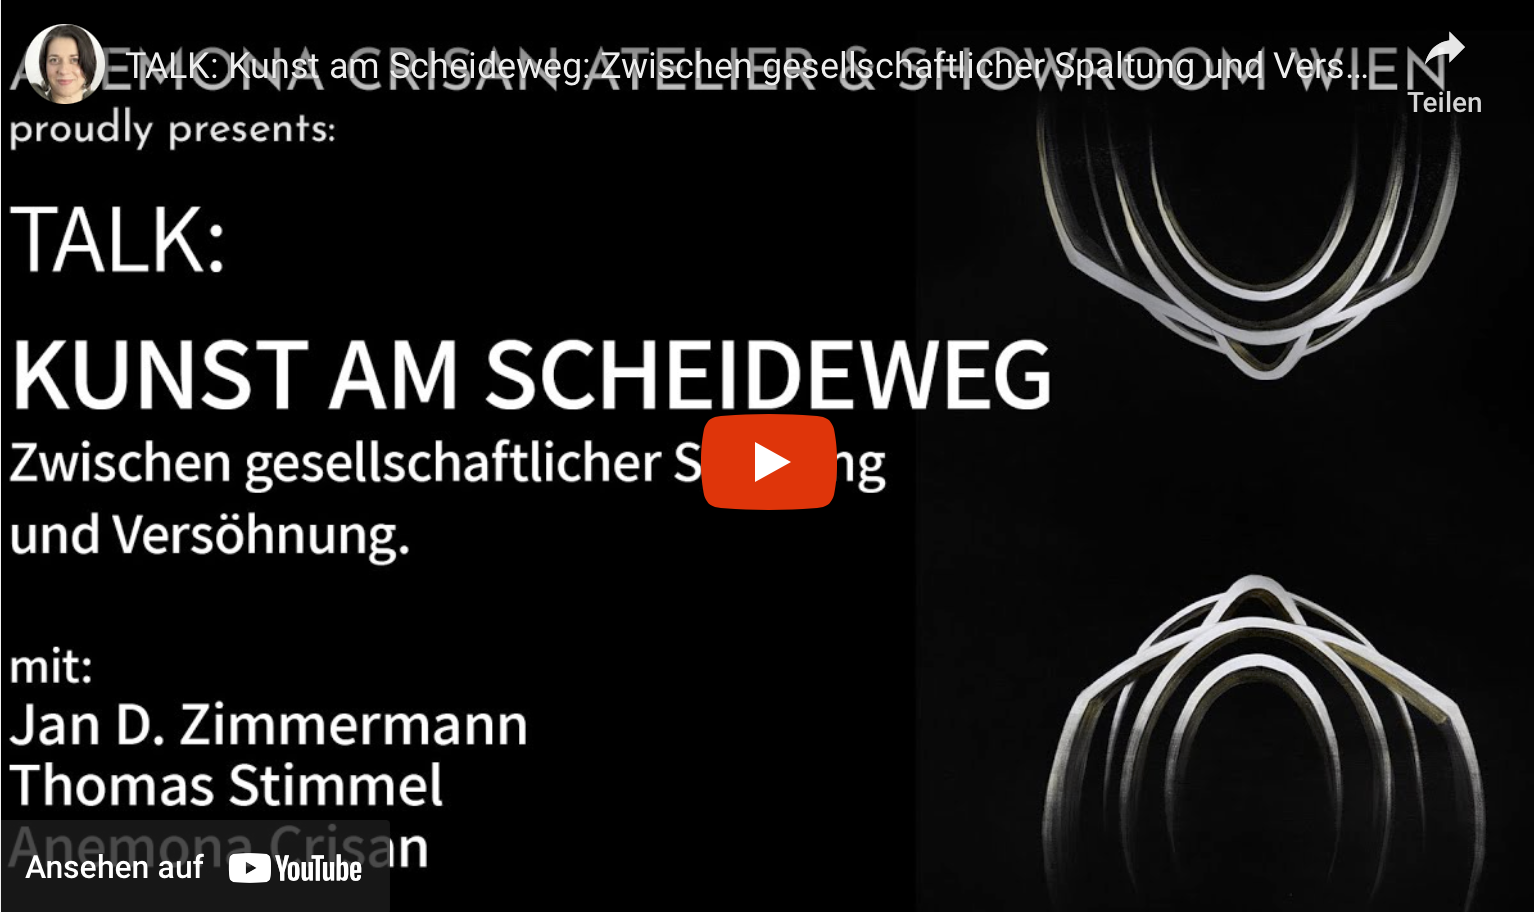 Das Video des Talks “Kunst am Scheideweg: Zwischen gesellschaftlicher Spaltung und Versöhnung.“